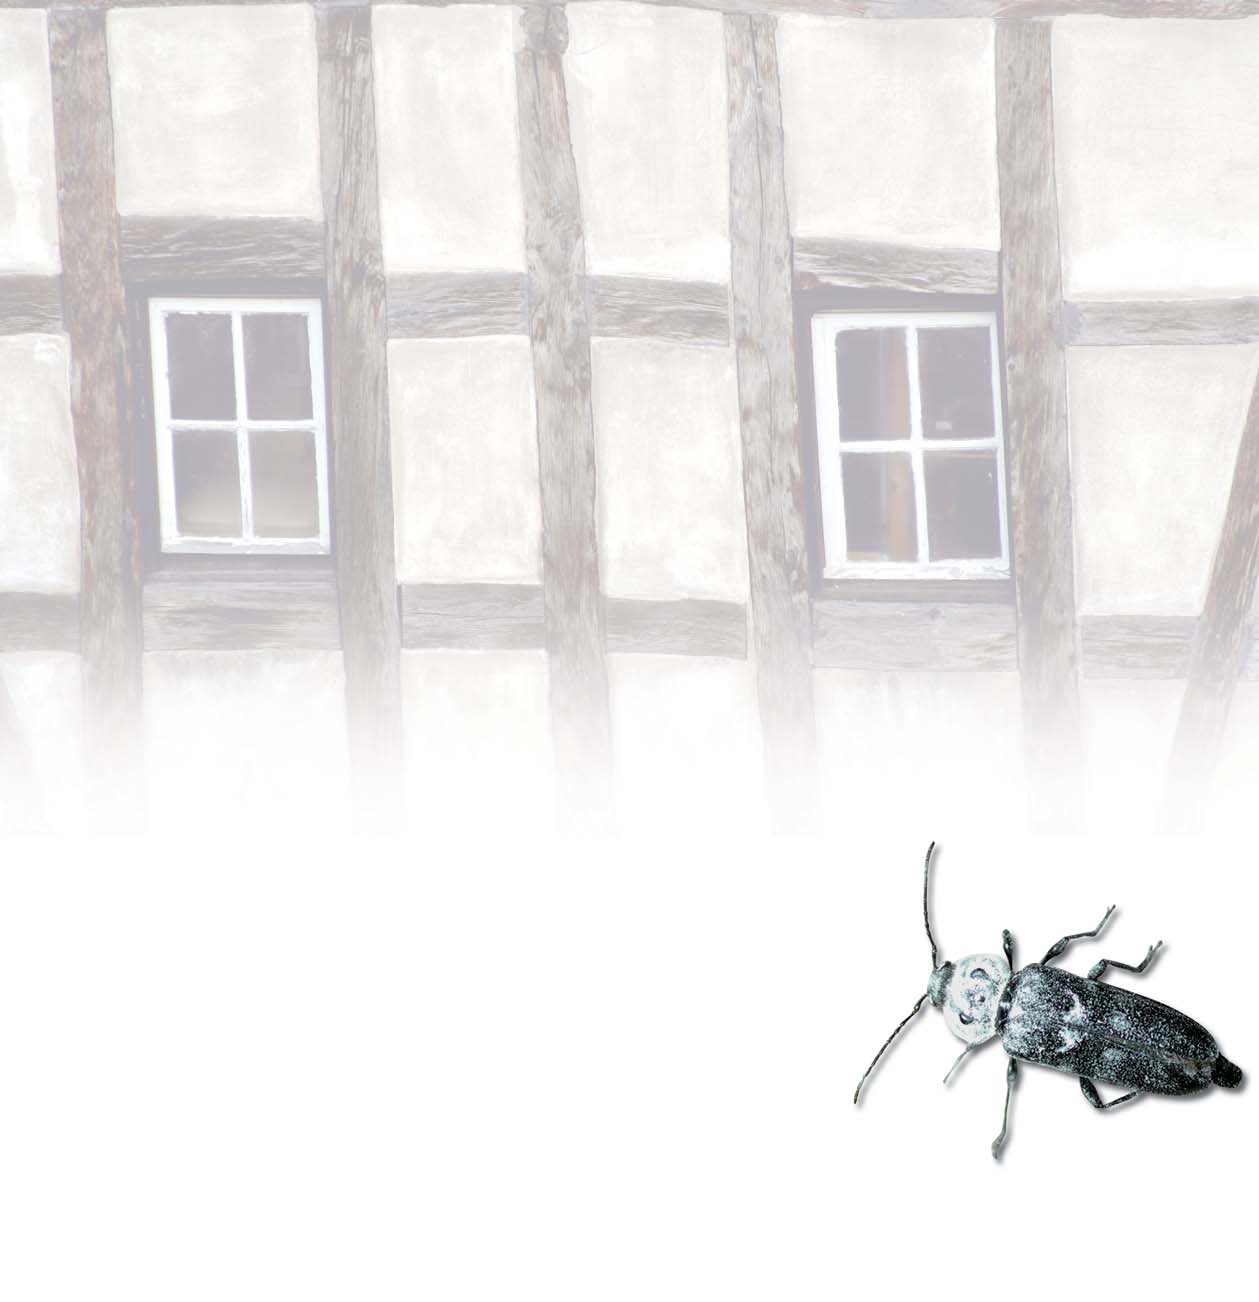 Holzzerstörende Insekten Befallsmerkmale, Monitoring, Langzeituntersuchungen und Begleitung von Bekämpfungsmaßnahmen in historischen Gebäuden Uwe Noldt (Hamburg) 1 Langzeituntersuchungen zur